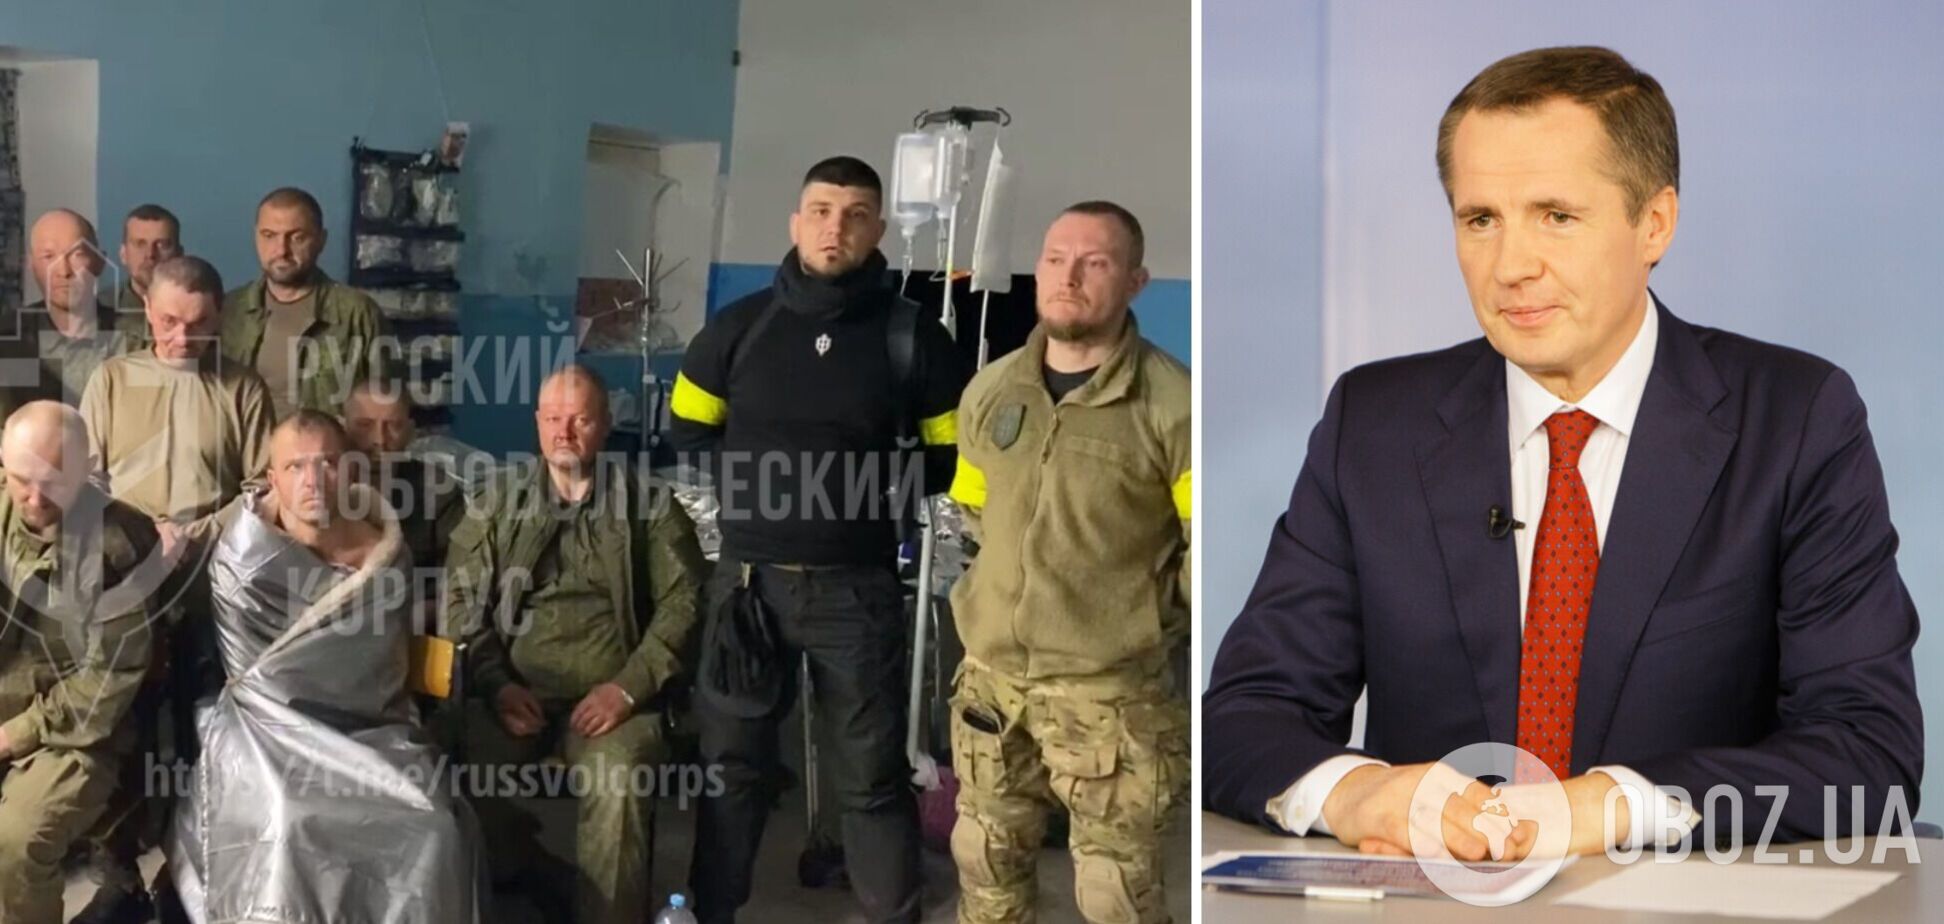 Губернатор Бєлгородської області не прийшов на зустріч із РДК, щоб забрати полонених: їх передадуть Україні. Відео